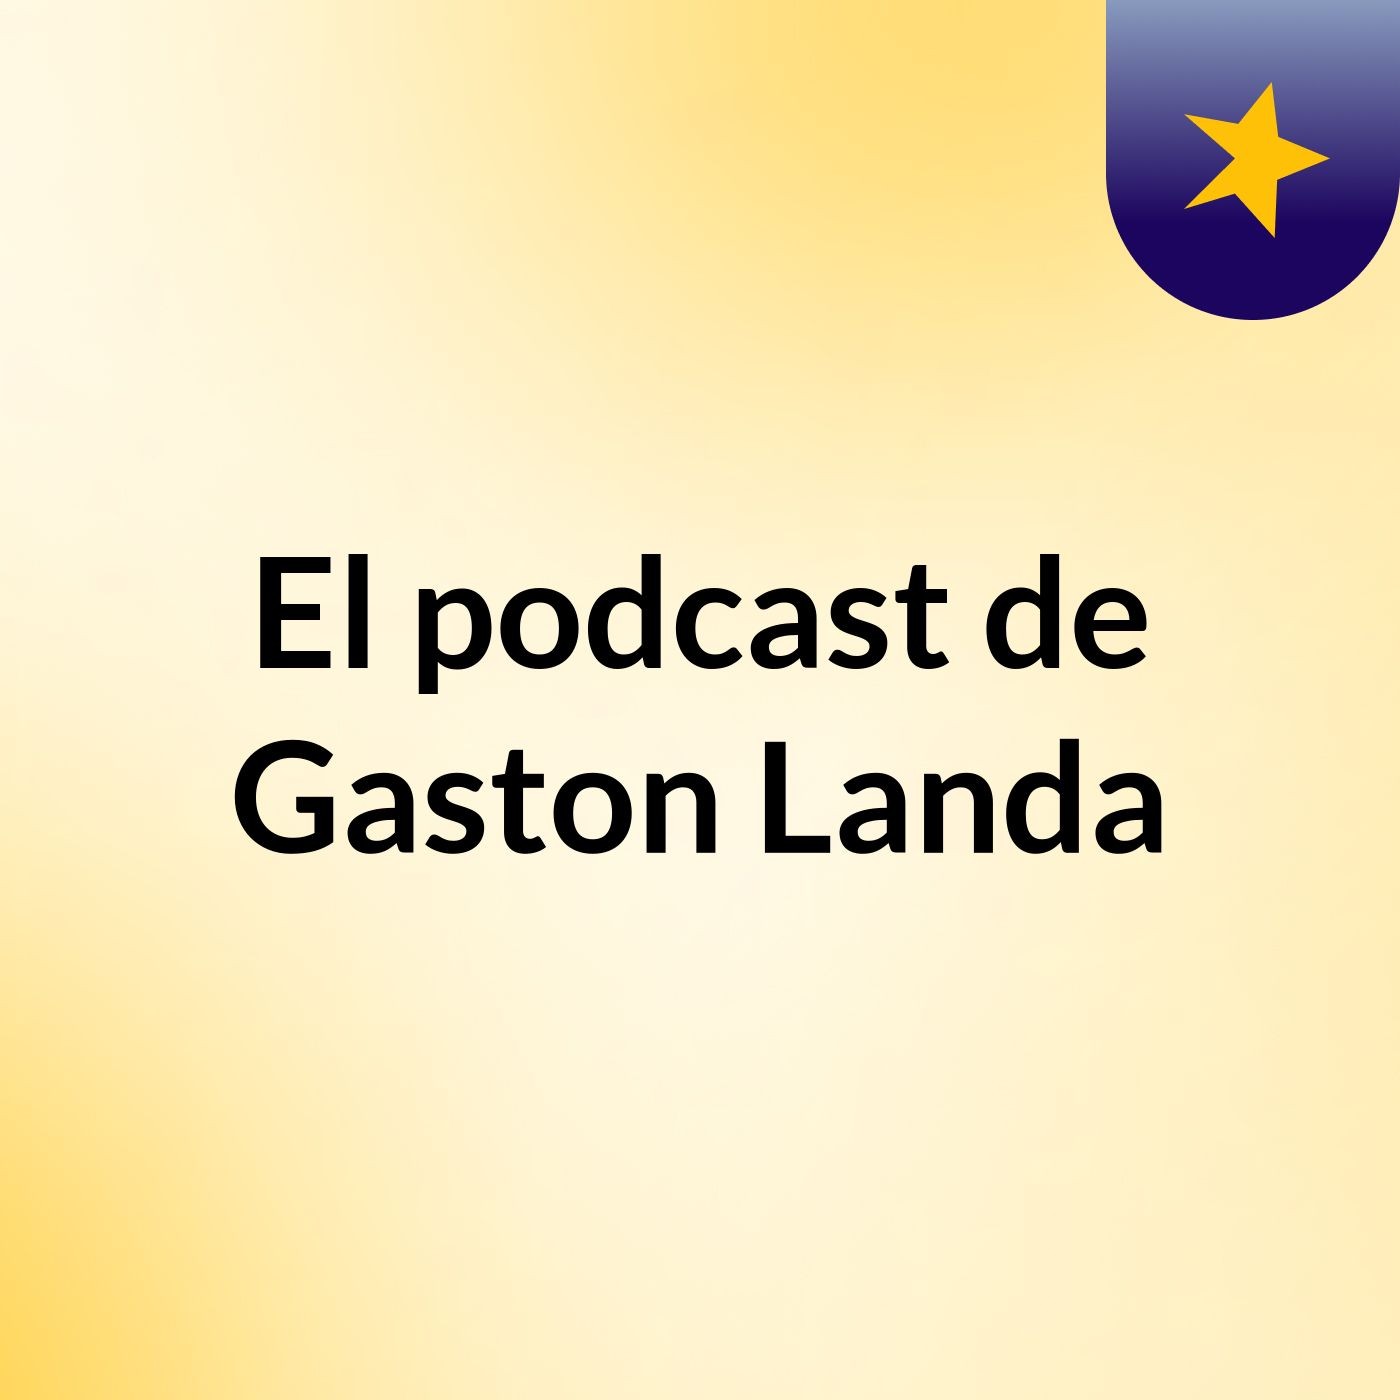 El podcast de Gaston Landa